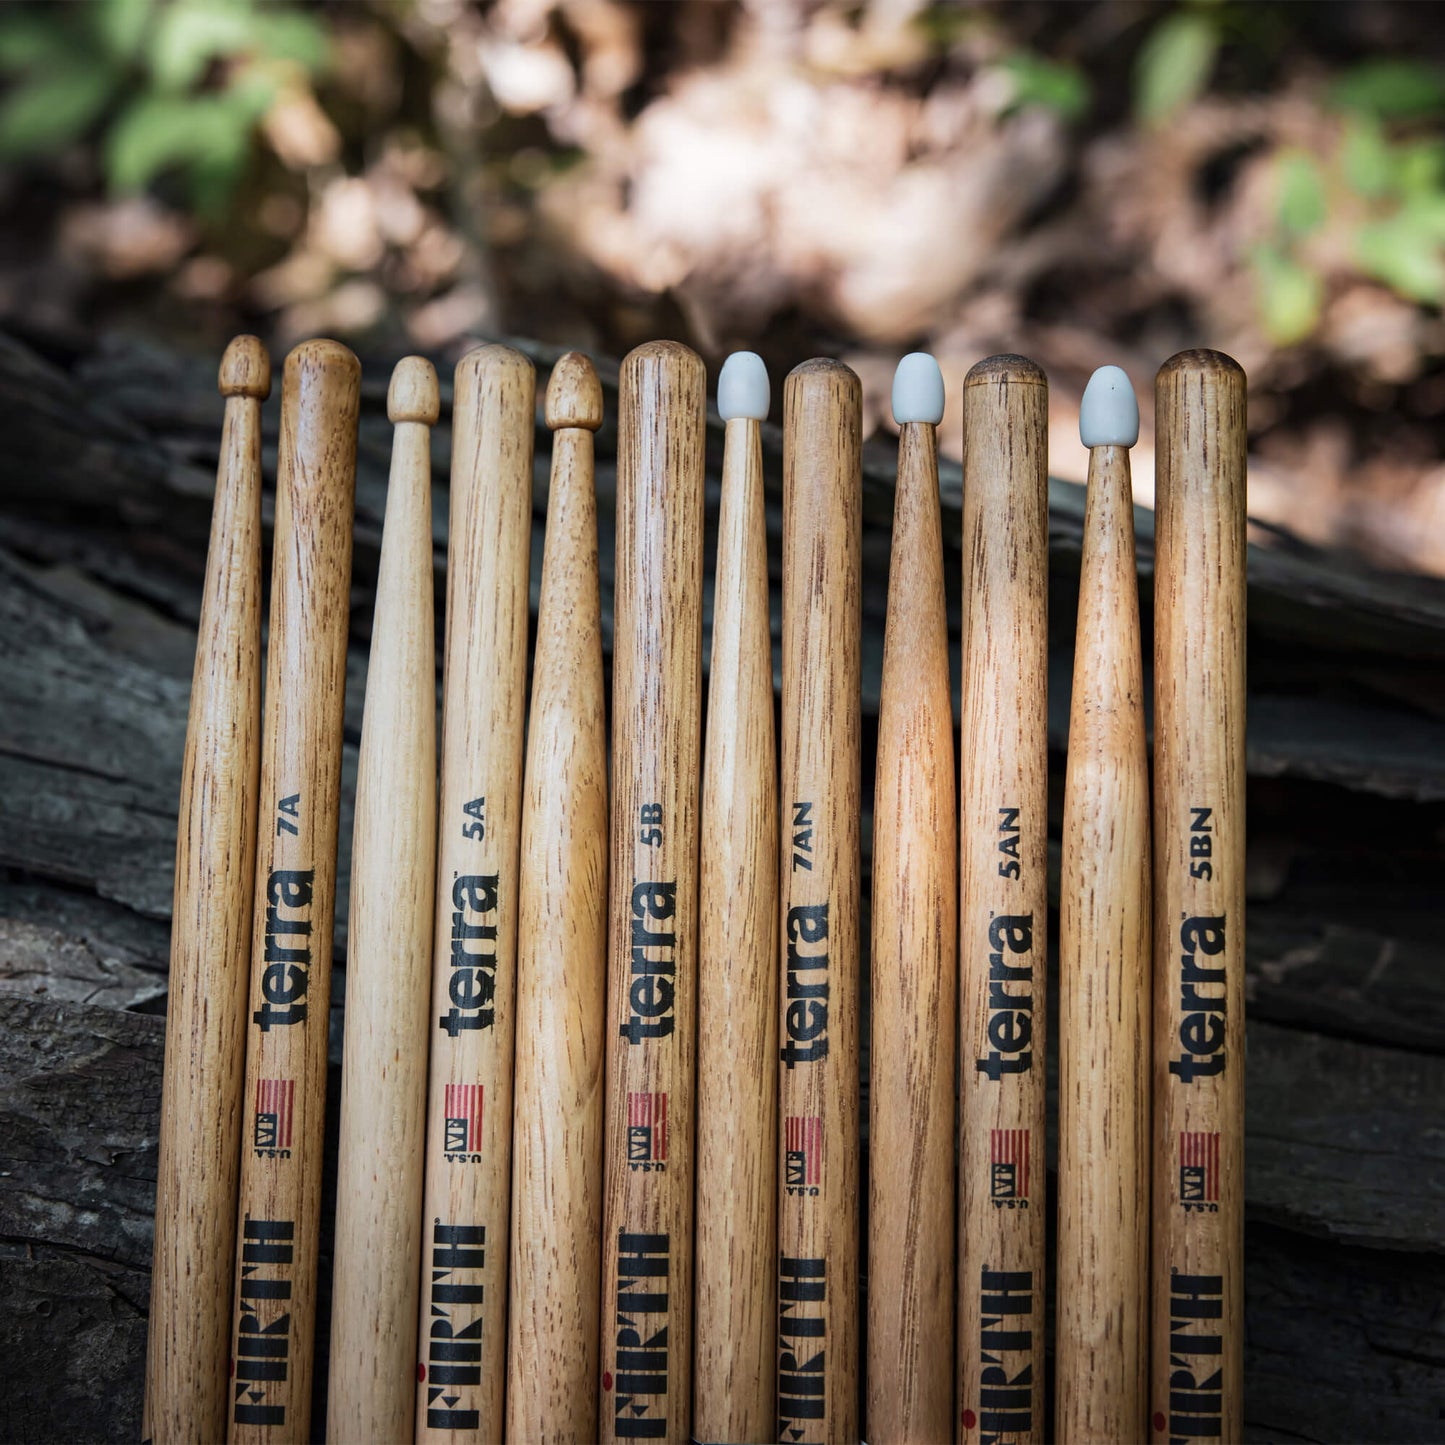 American Classic® 5BT Terra Series Drumsticks, Wood Tip